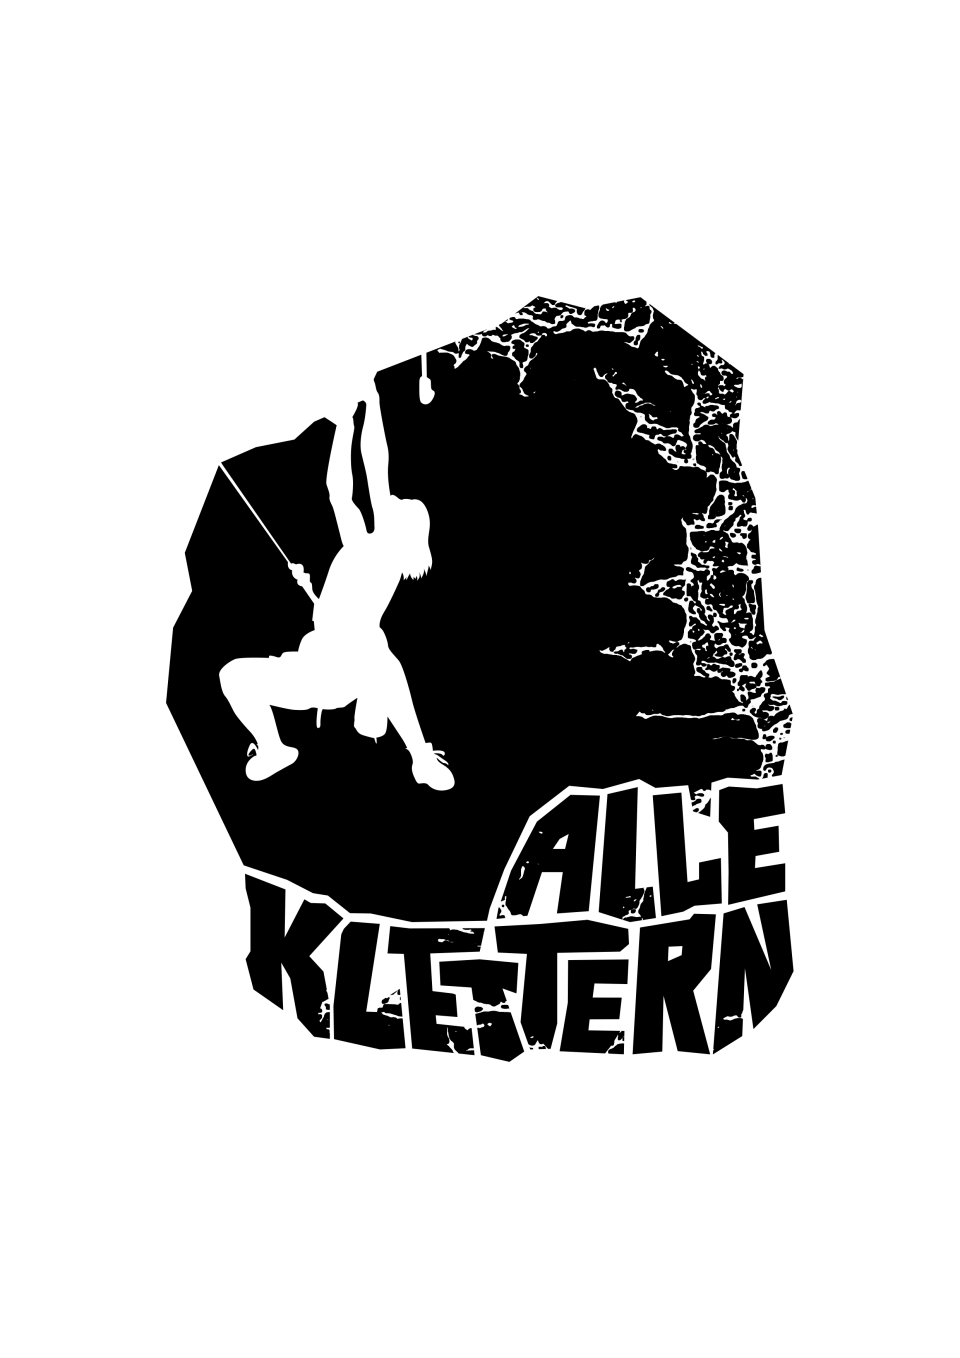 Eine Zeichnung eines Kletterers in weiß vor einem schwarzen Felsen, darunter ein Schriftzug "Alle Klettern"